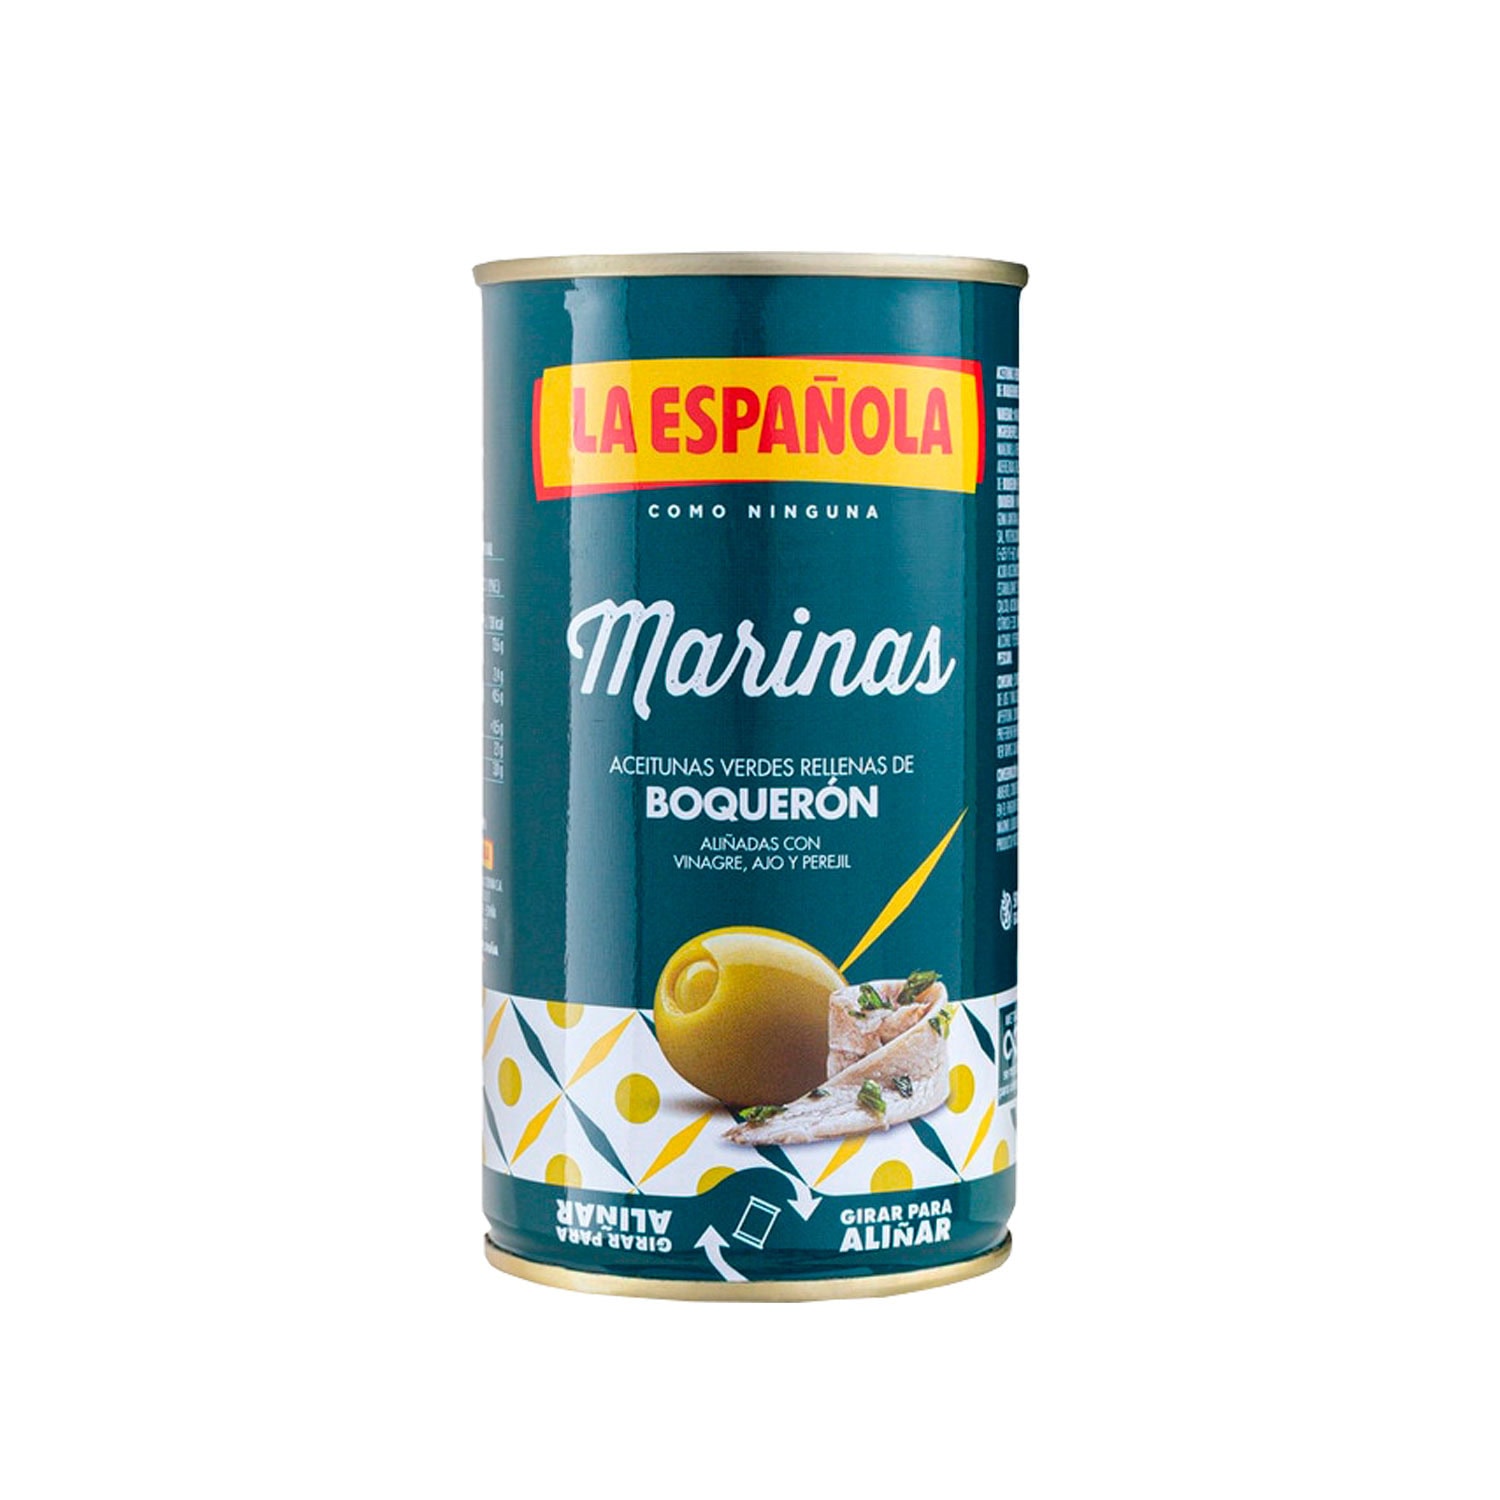 La española aceitunas verdes rellenas de boquerón aliñadas con ajos y perejil lata 130 gr